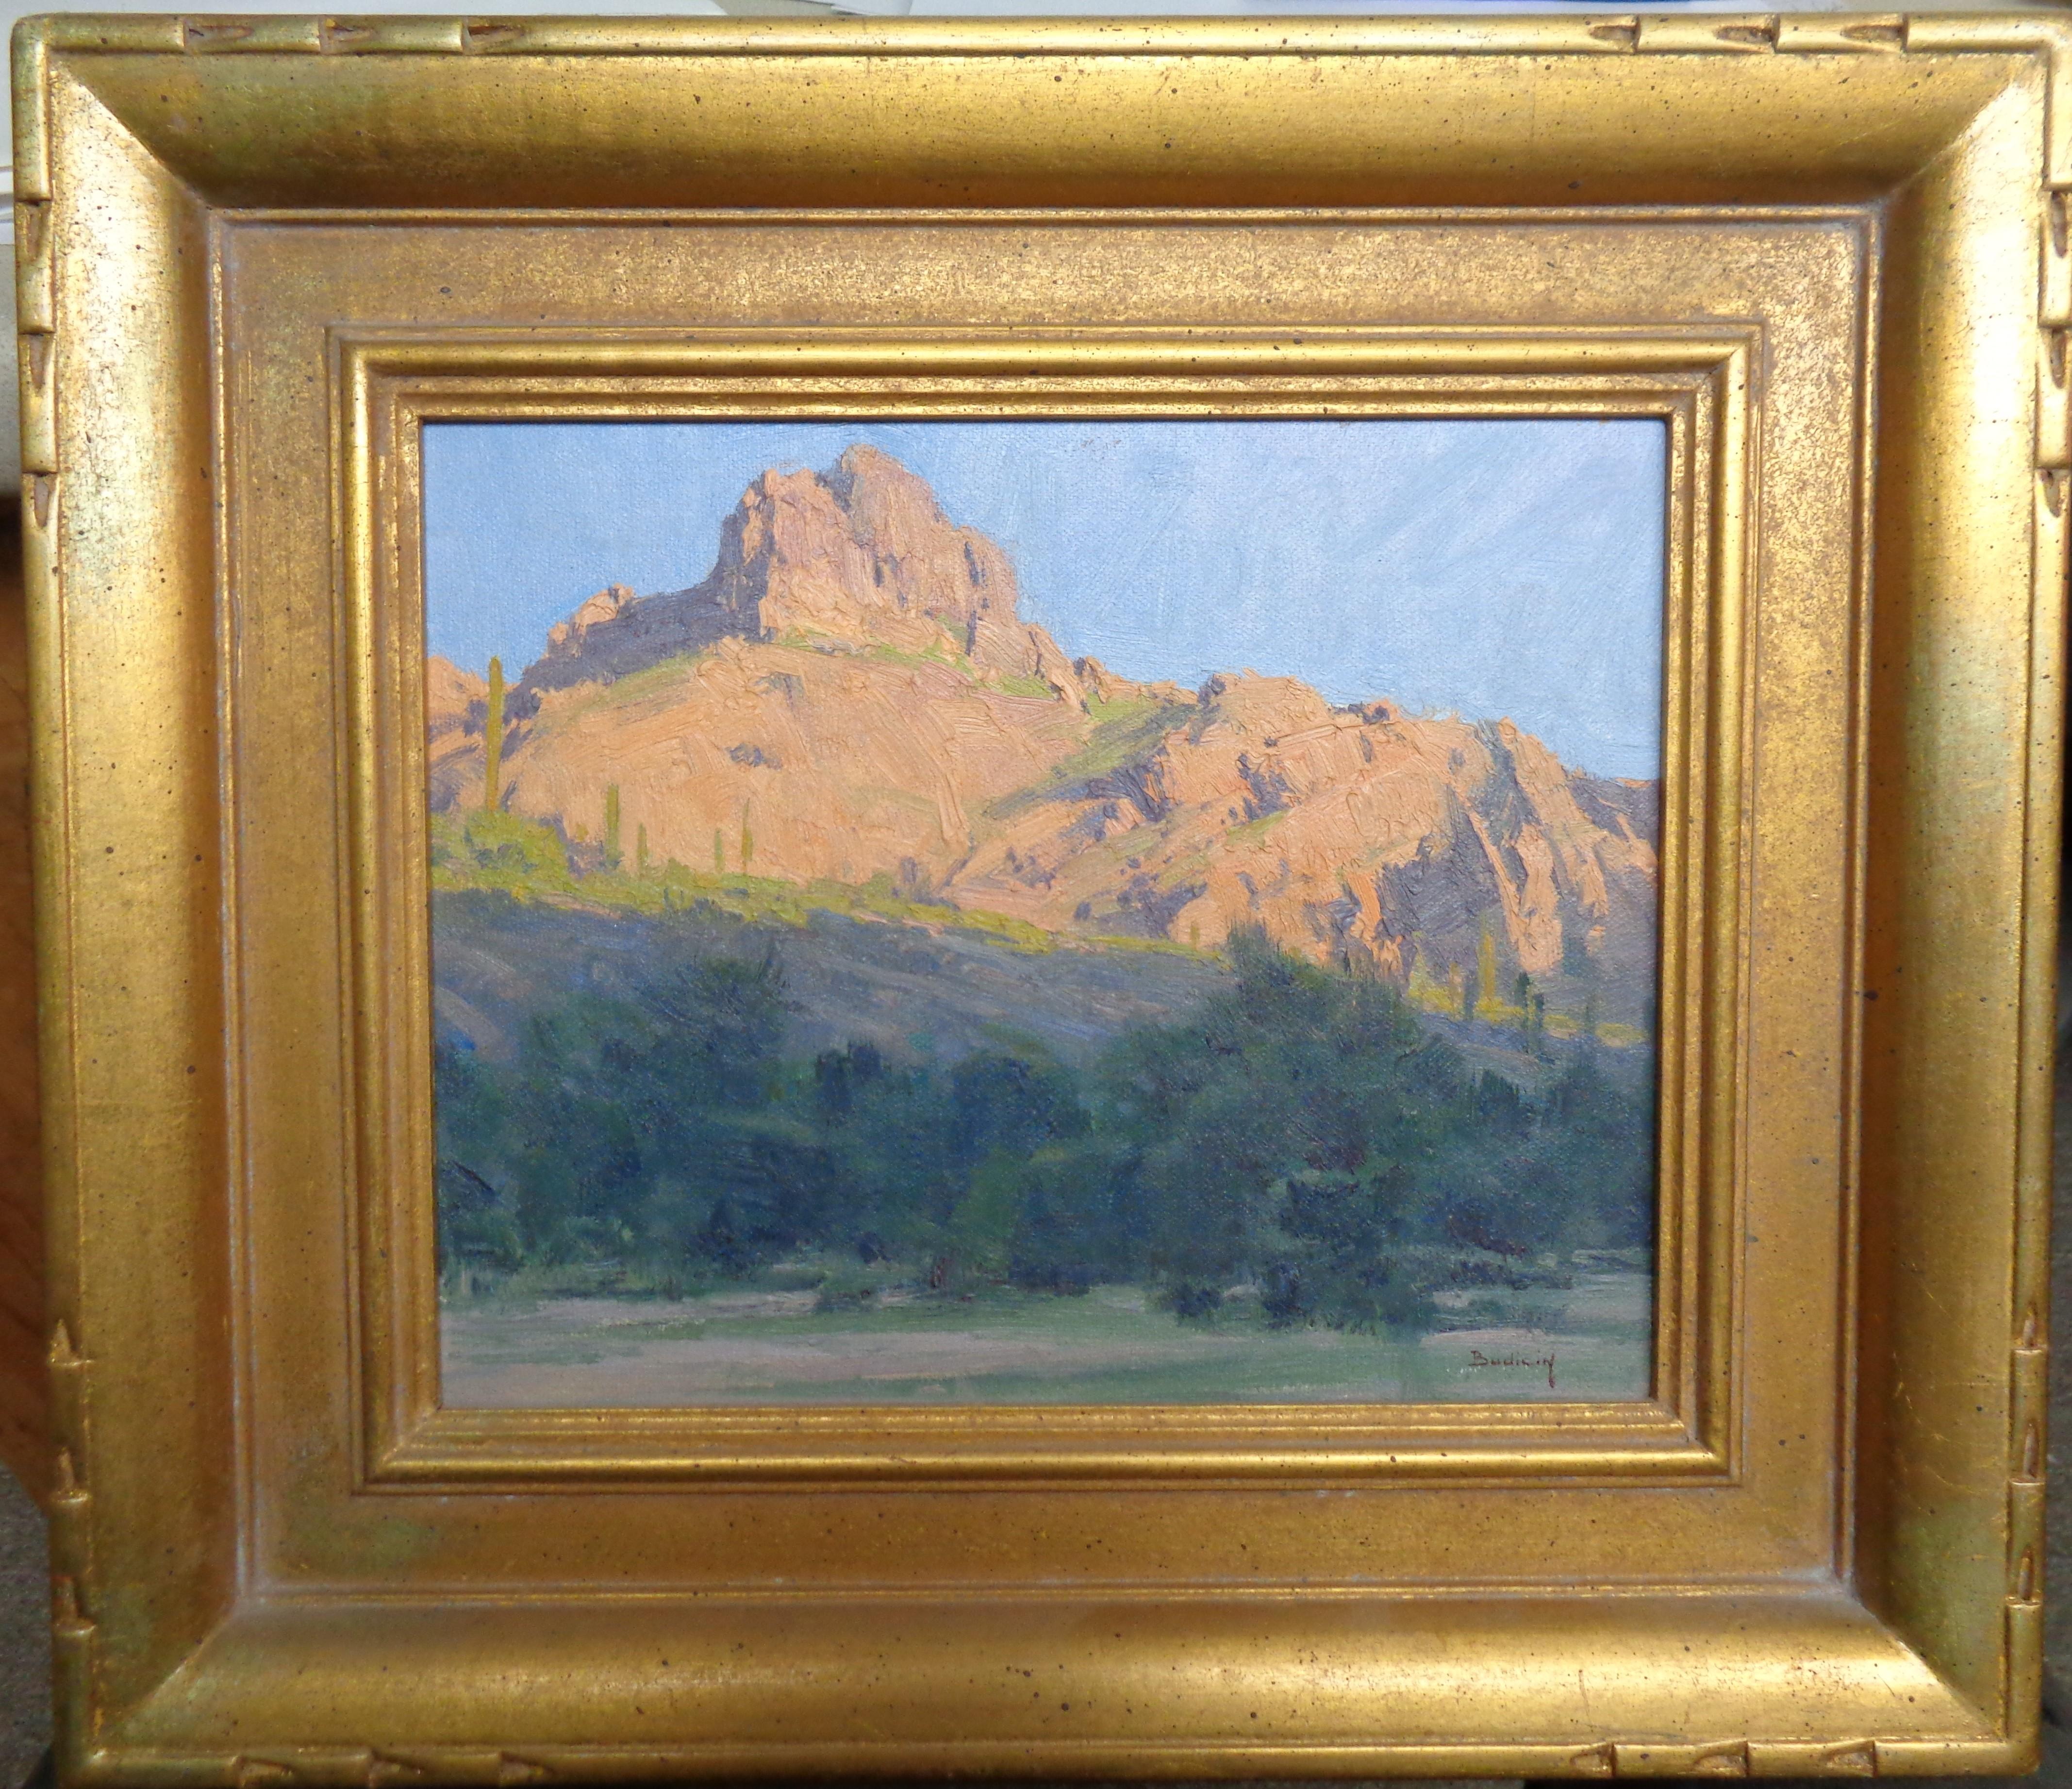 Dans le canyon
huile/toile posée sur panneau
image 8 x 10
Acheté à l'artiste en 2003. Il s'agit d'une belle peinture en plein air réalisée à Scottsdale au Bulldog Canyon. Ce tableau est l'un des deux tableaux de Budicin que j'ai répertoriés ici et